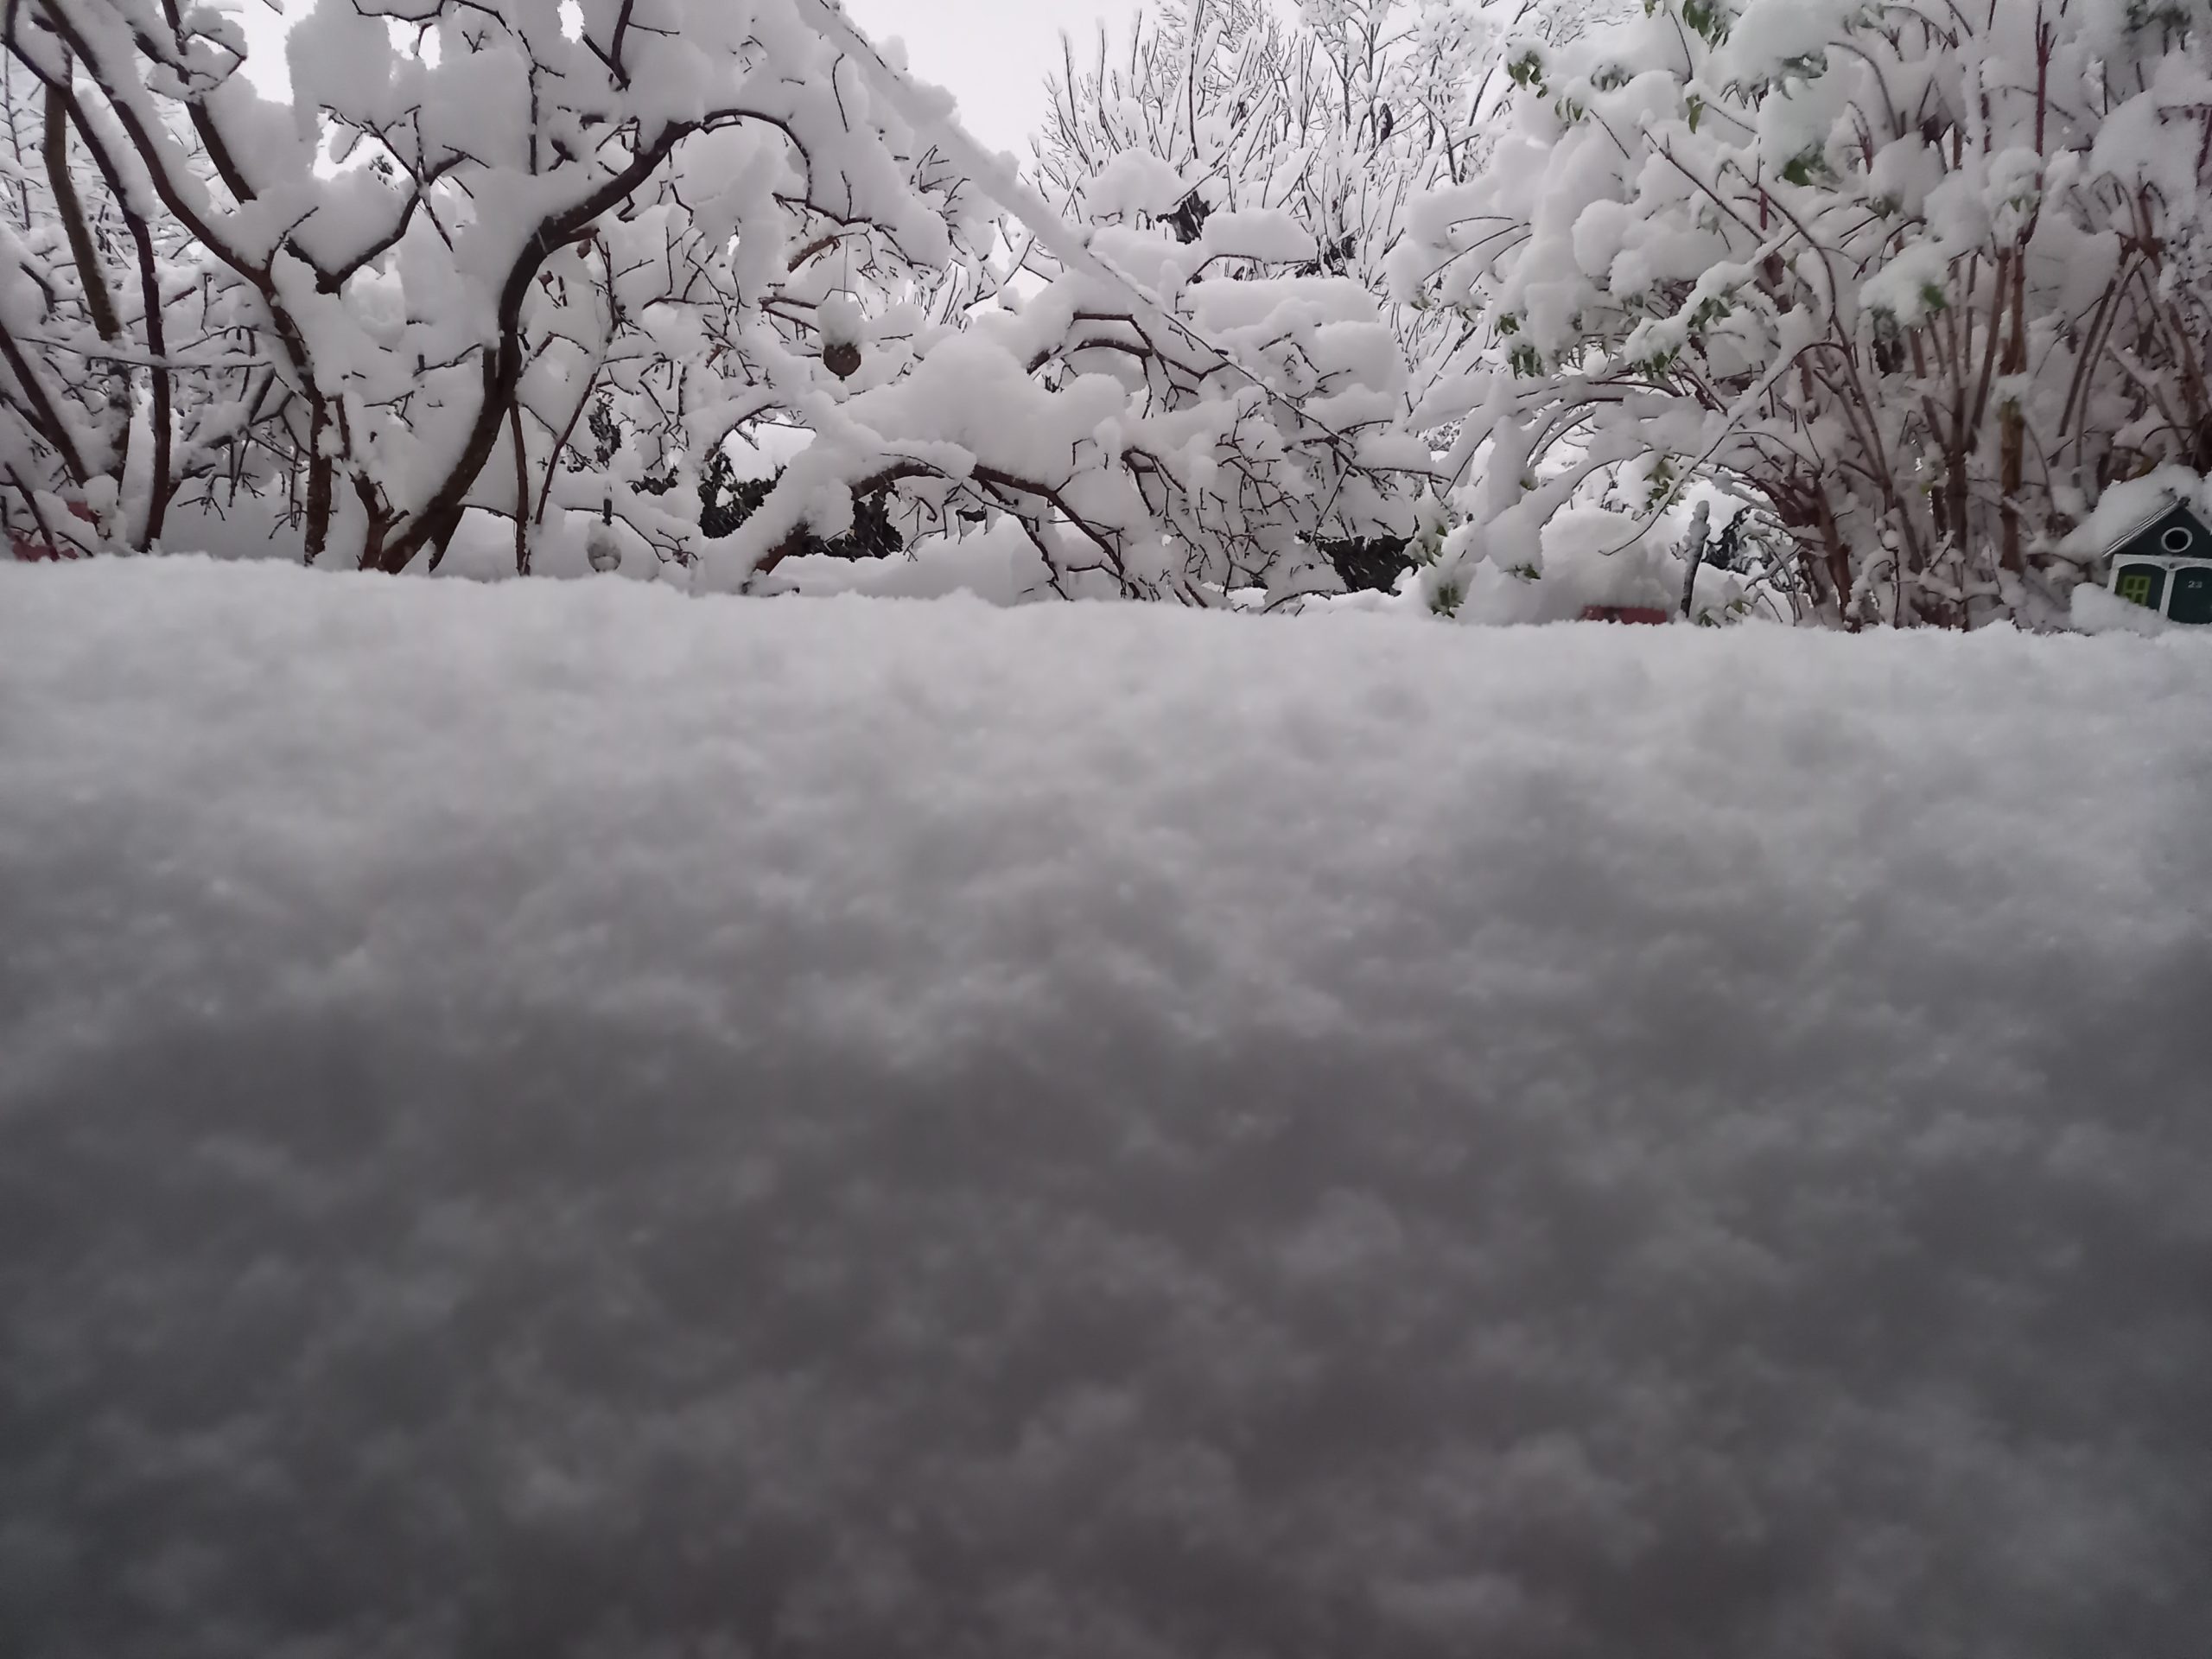 Viel Schnee vor einer Haustüre. Foto: Innpuls.me